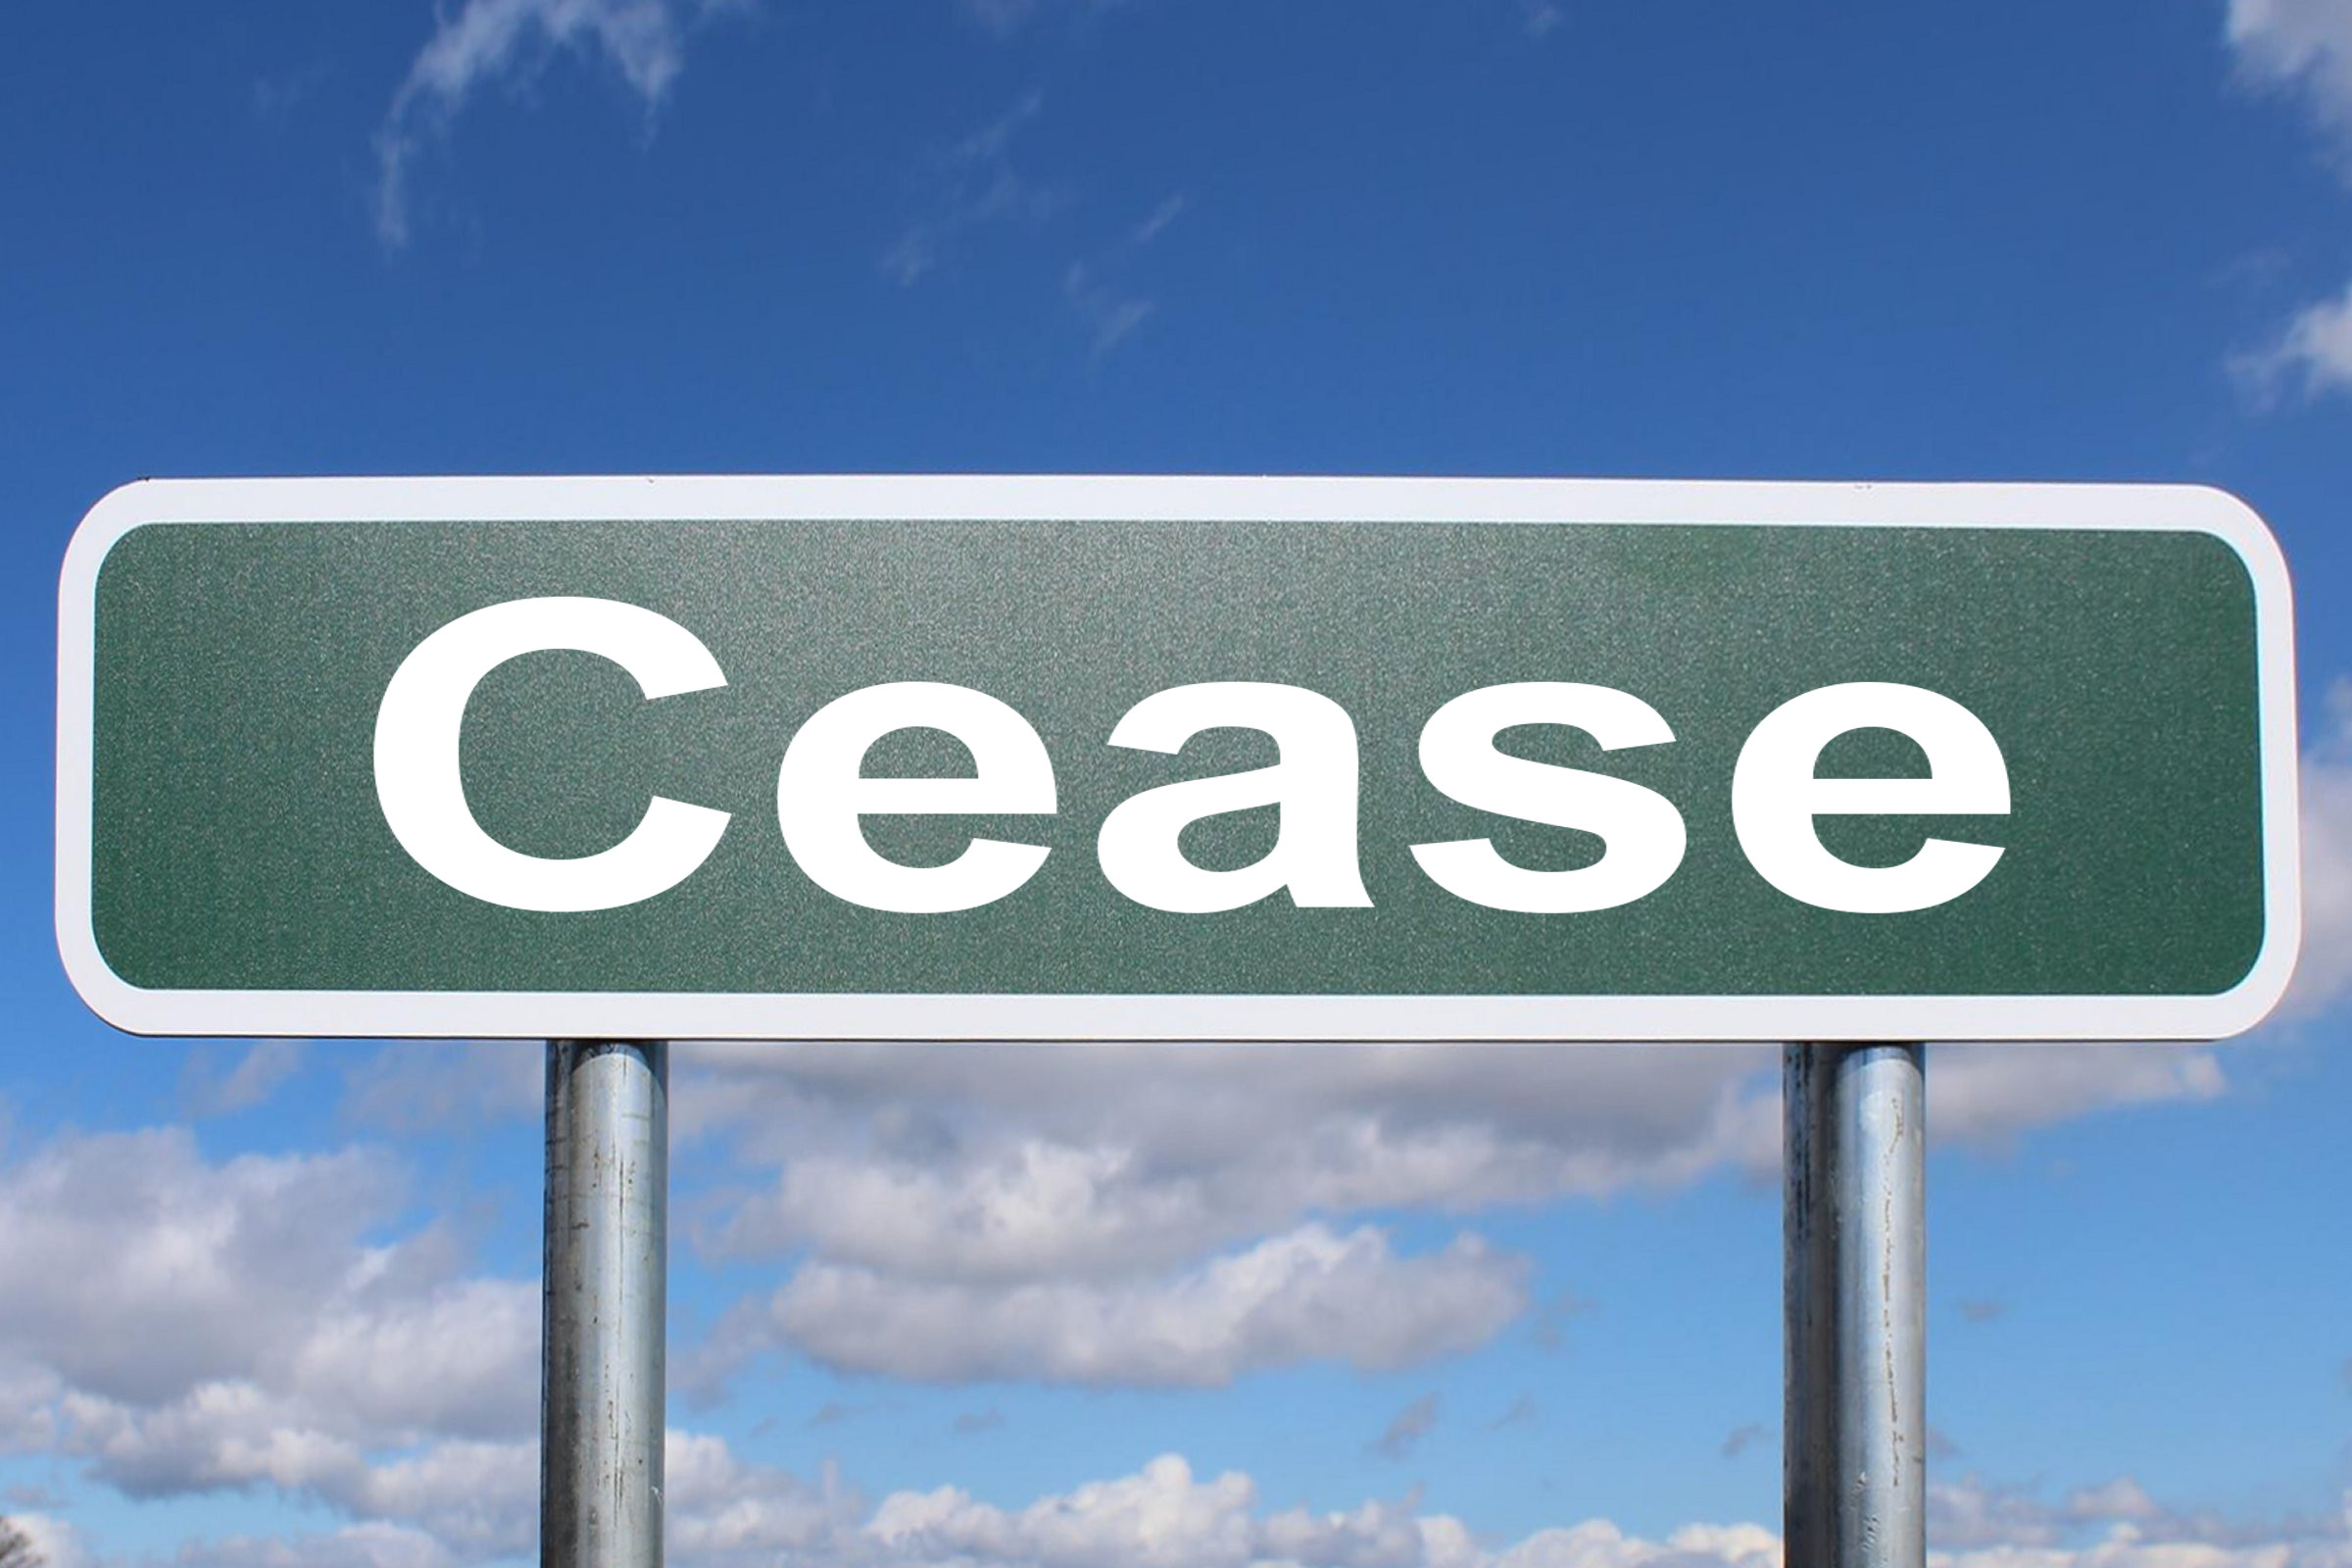 cease